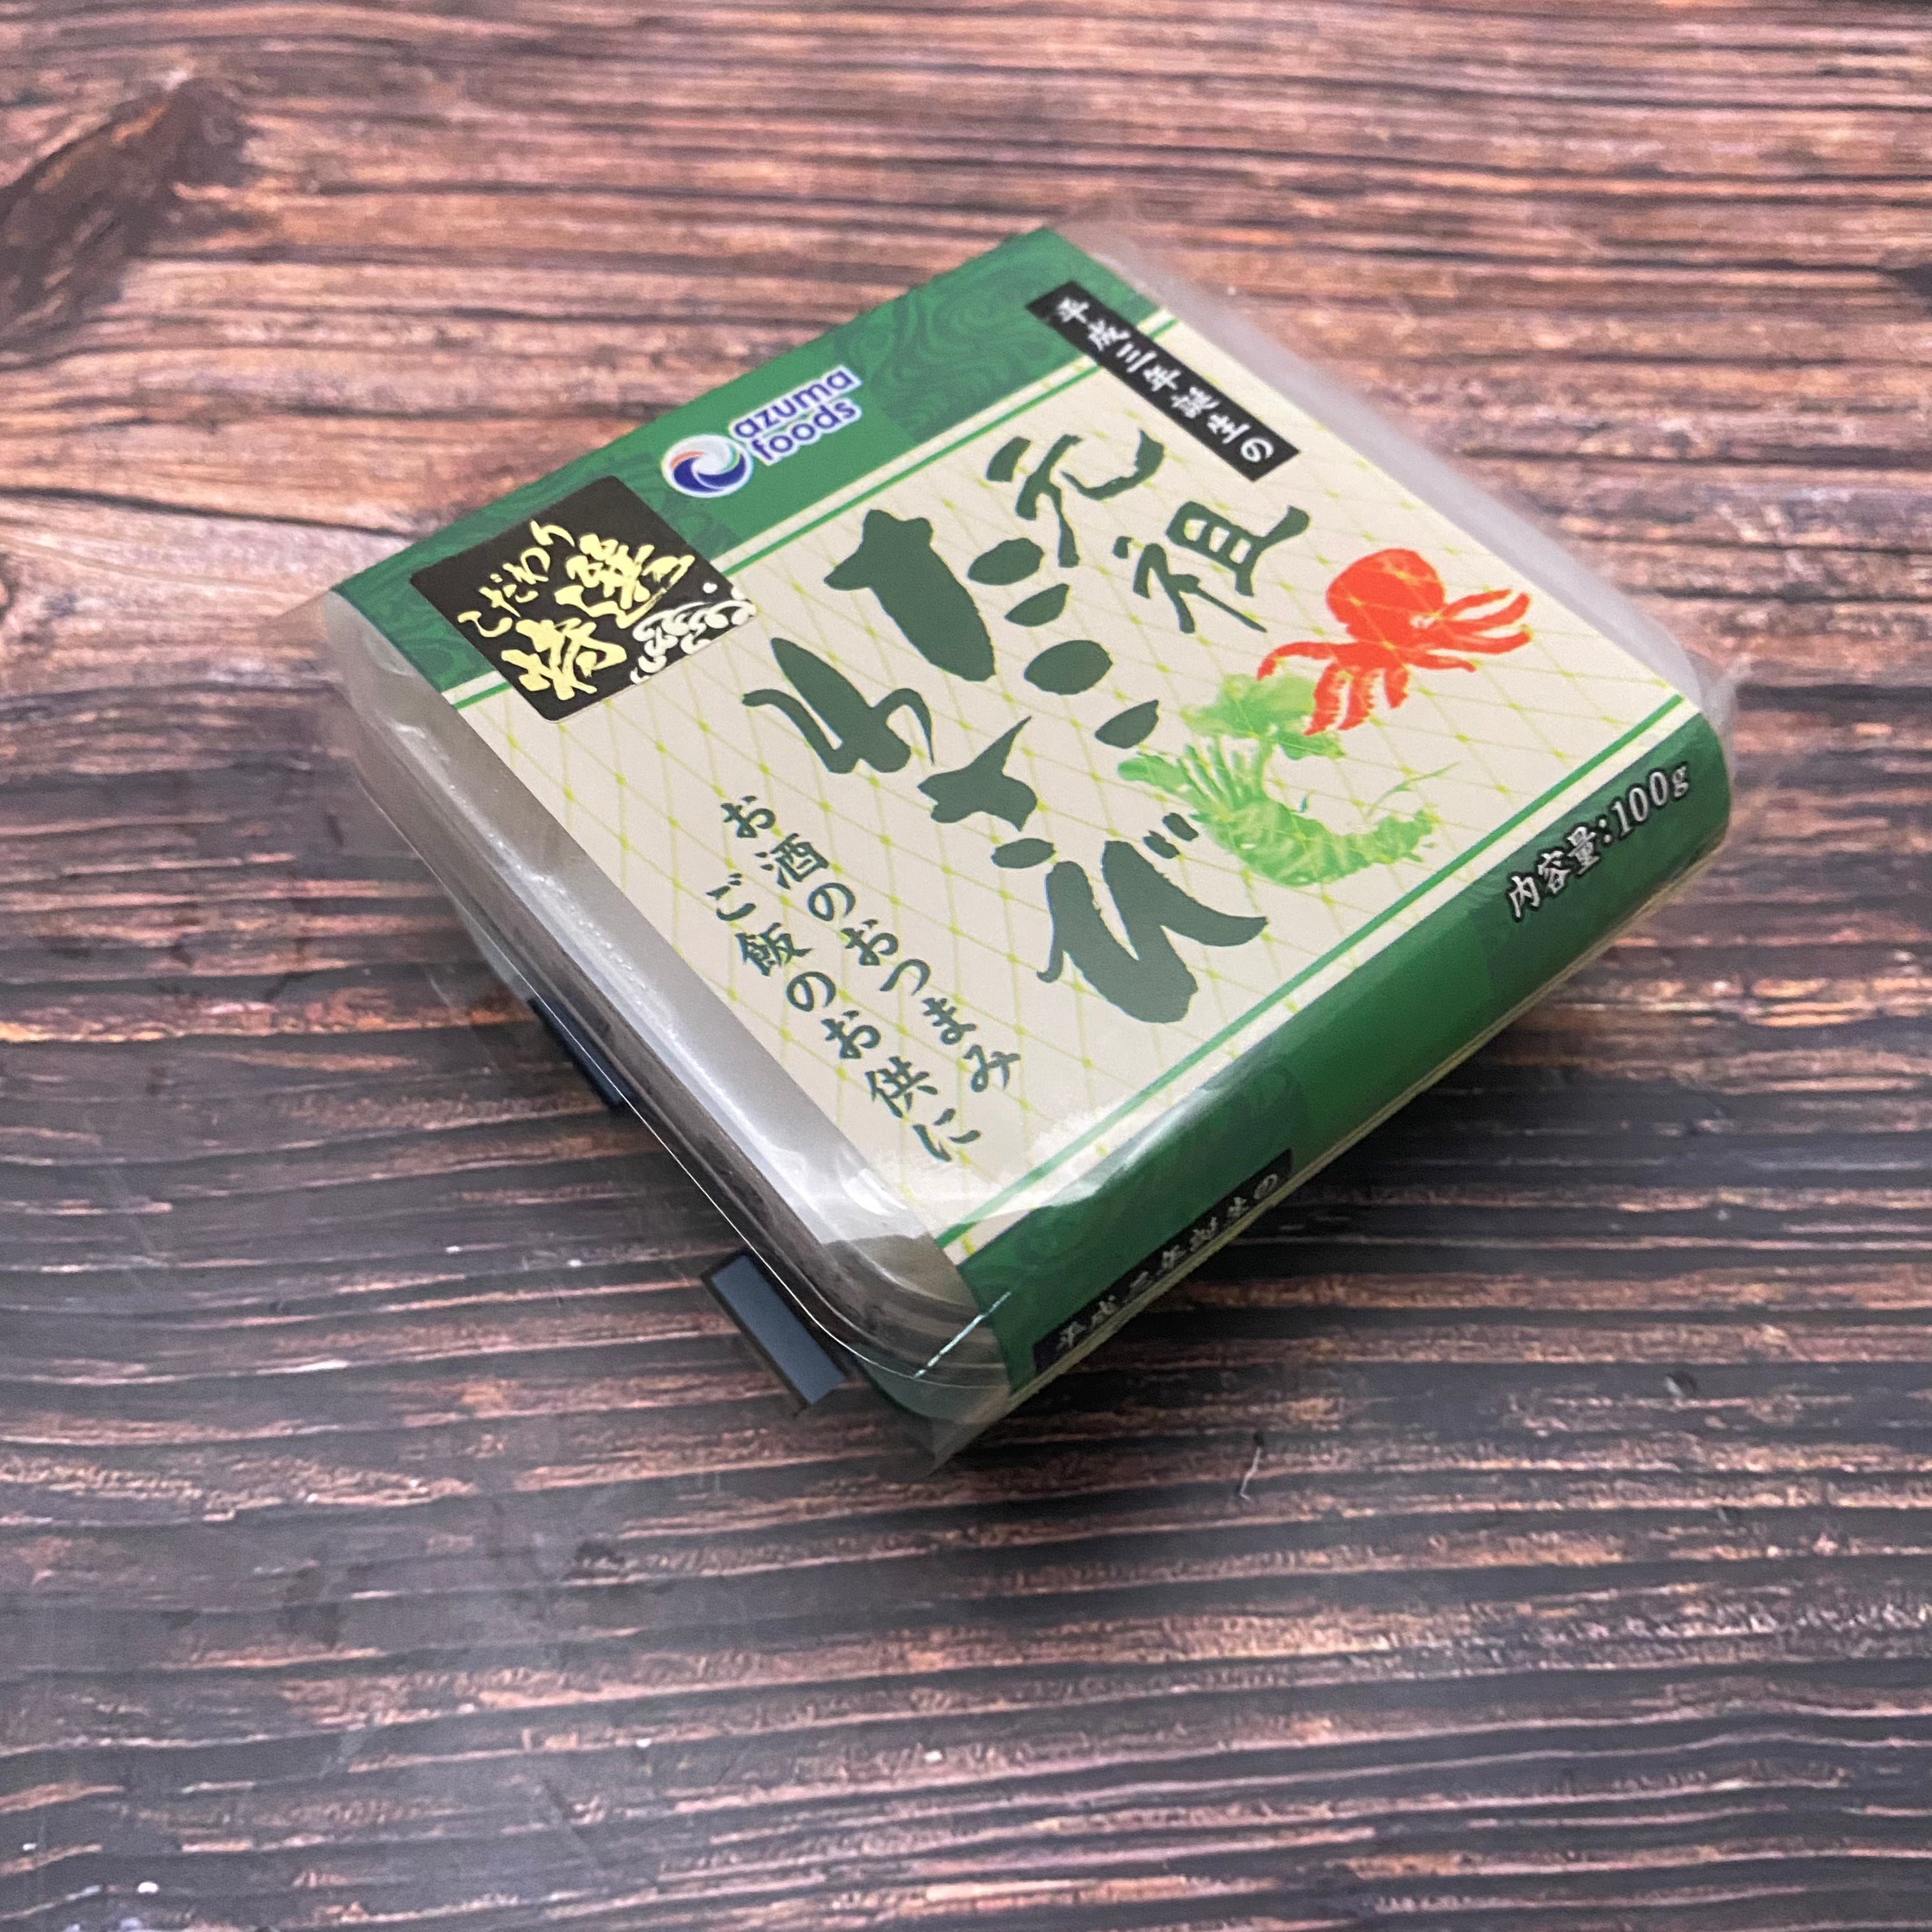 Frozen Tako Wasabi 100g Azuma ทาโกะวาซาบิ 100g/pack - The Foodworks 